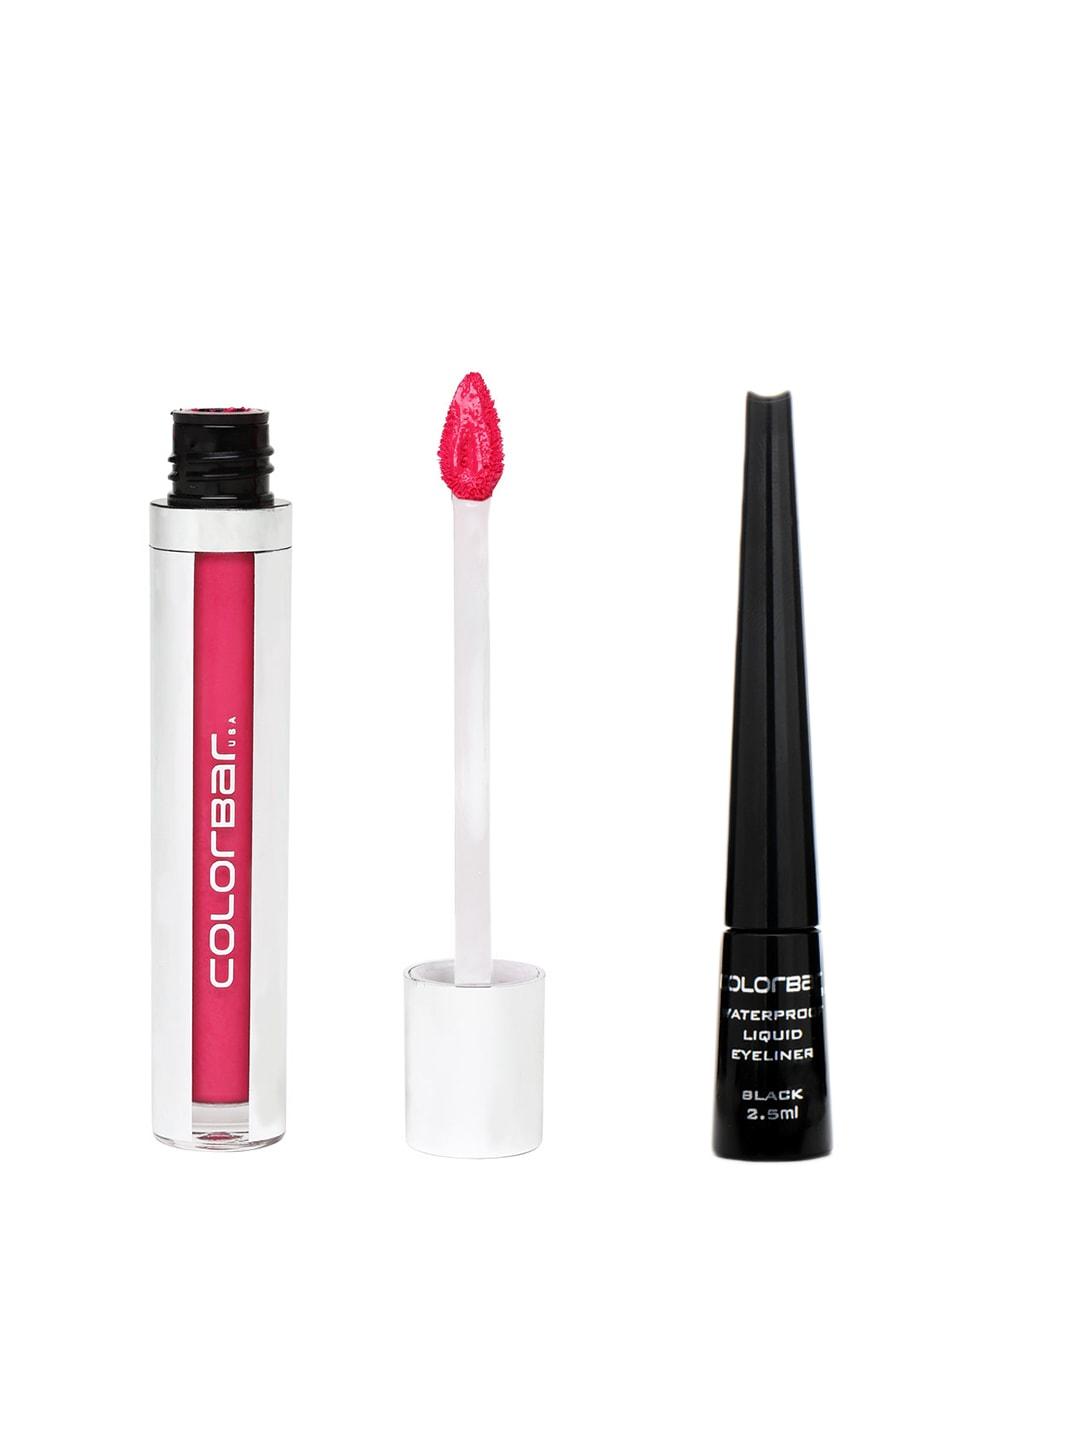 colorbar makeup gift set